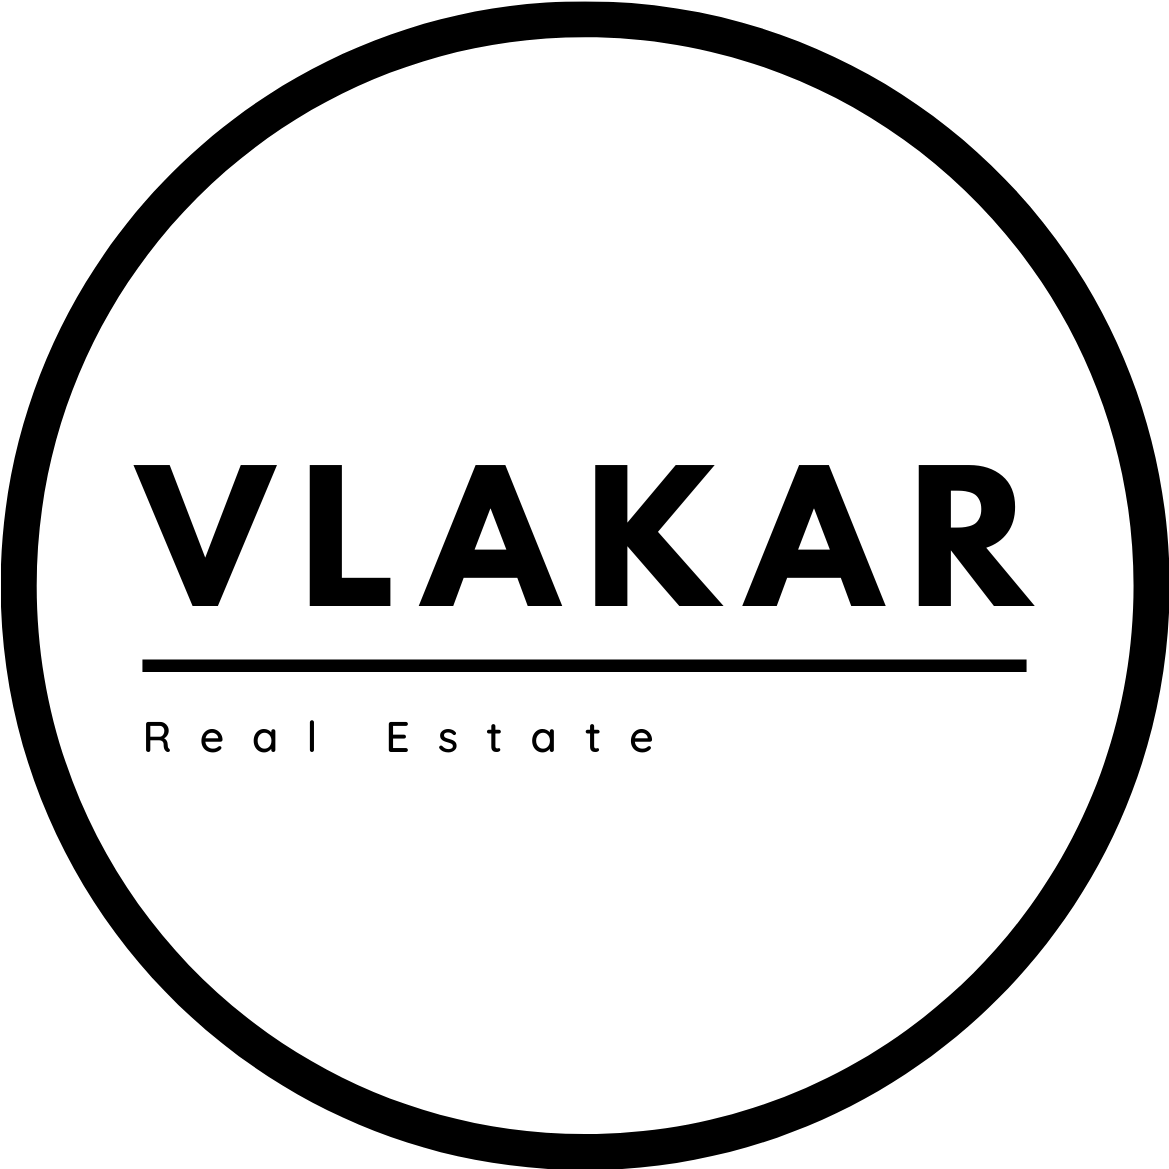 VLAKAR Real Estate